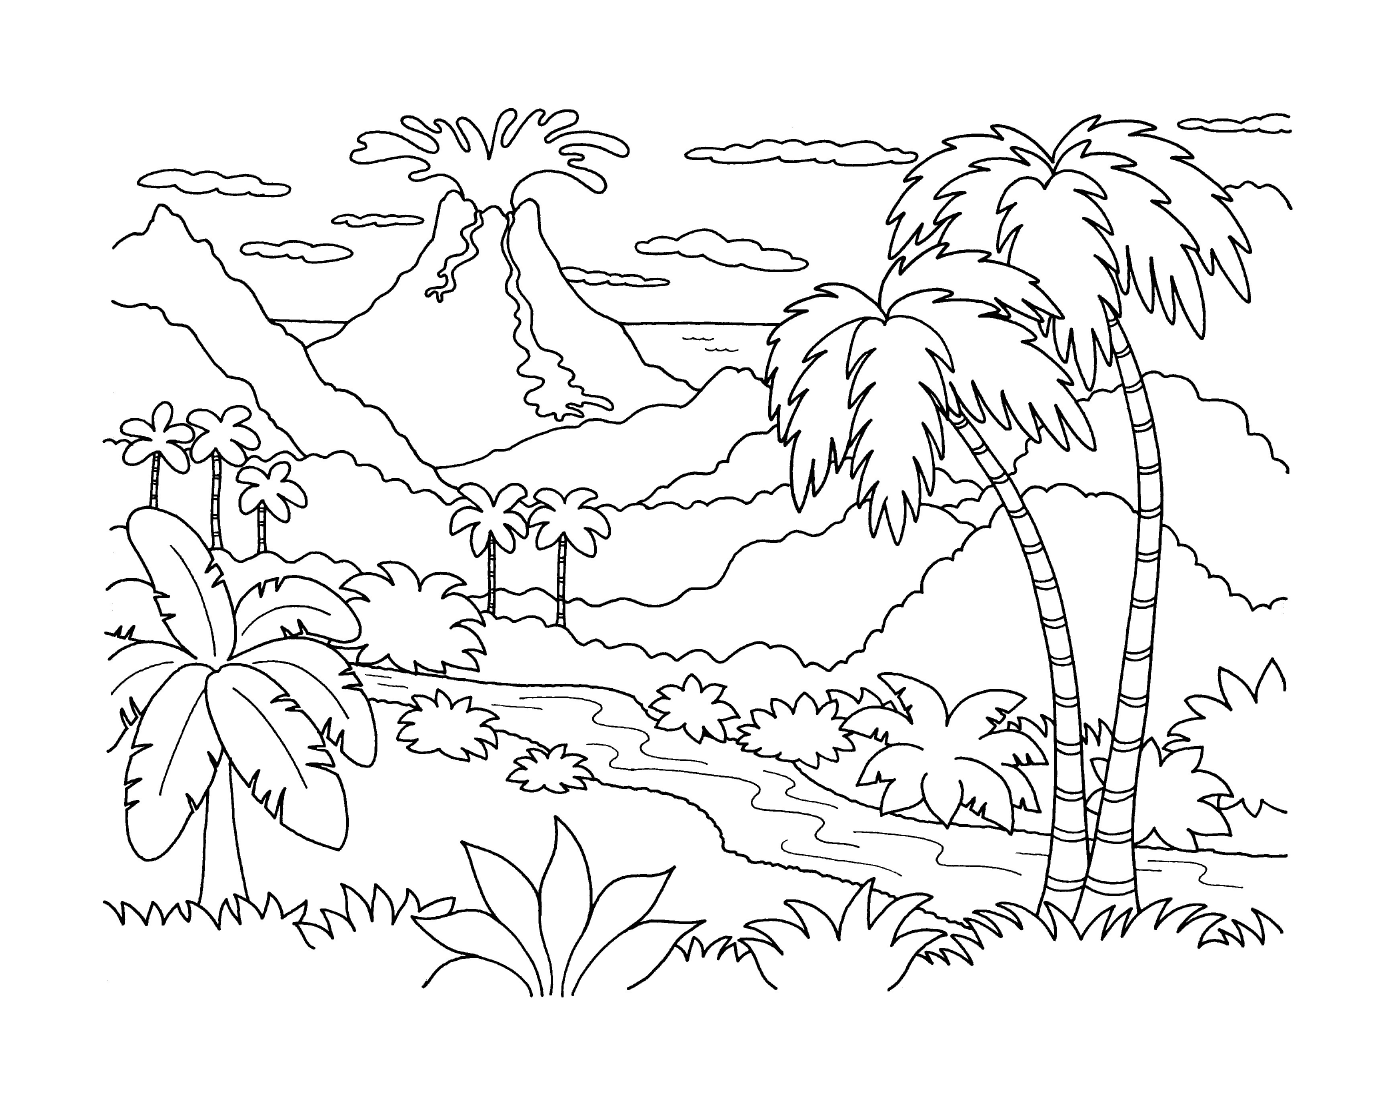  Eine Landschaft mit einem Vulkan 